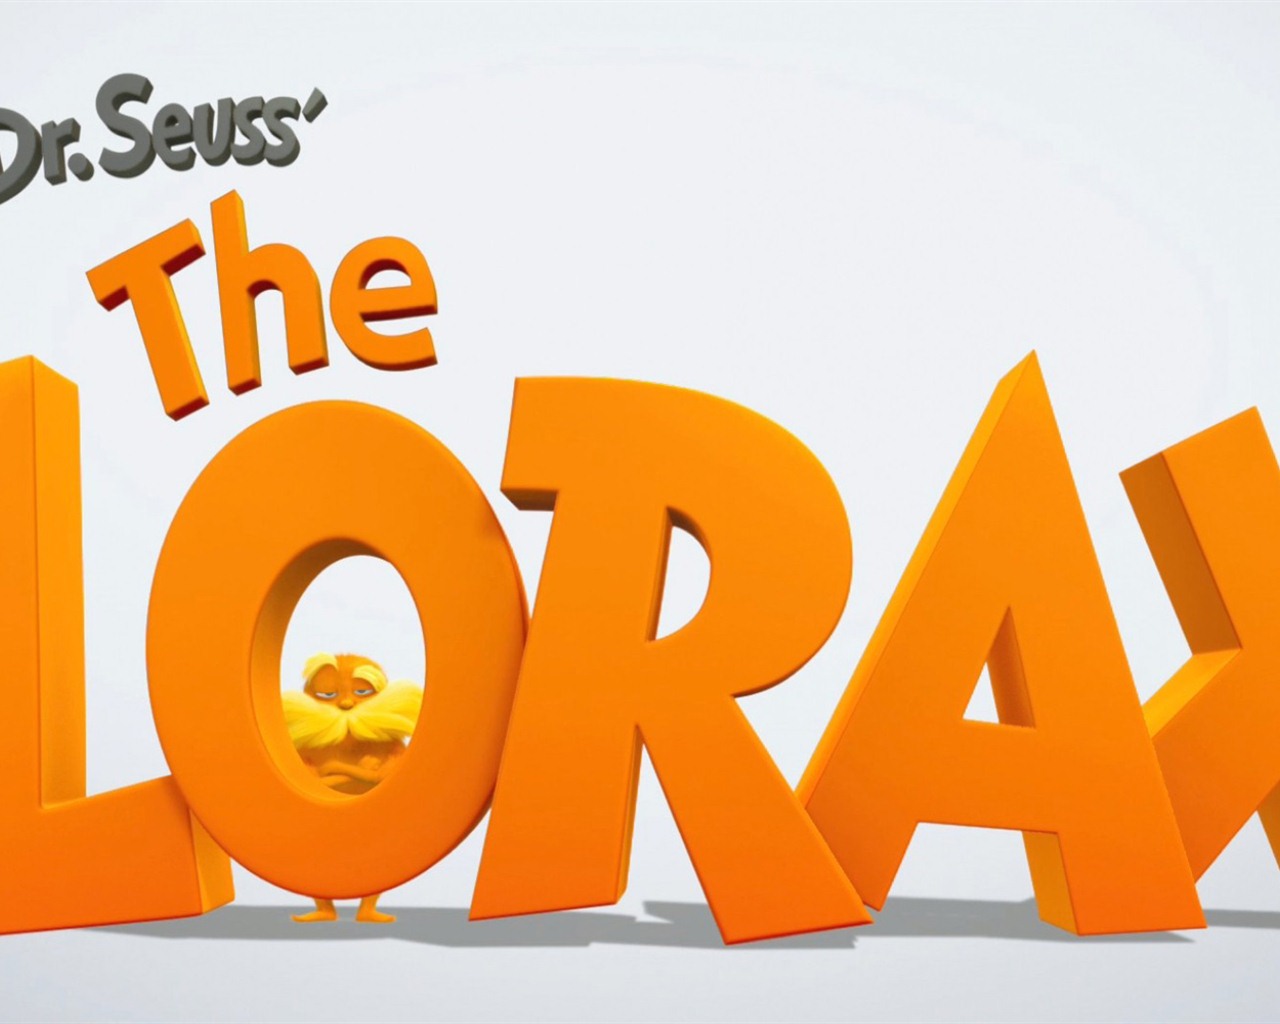 Dr. Seuss The Lorax 老雷斯的故事 高清壁纸1 - 1280x1024